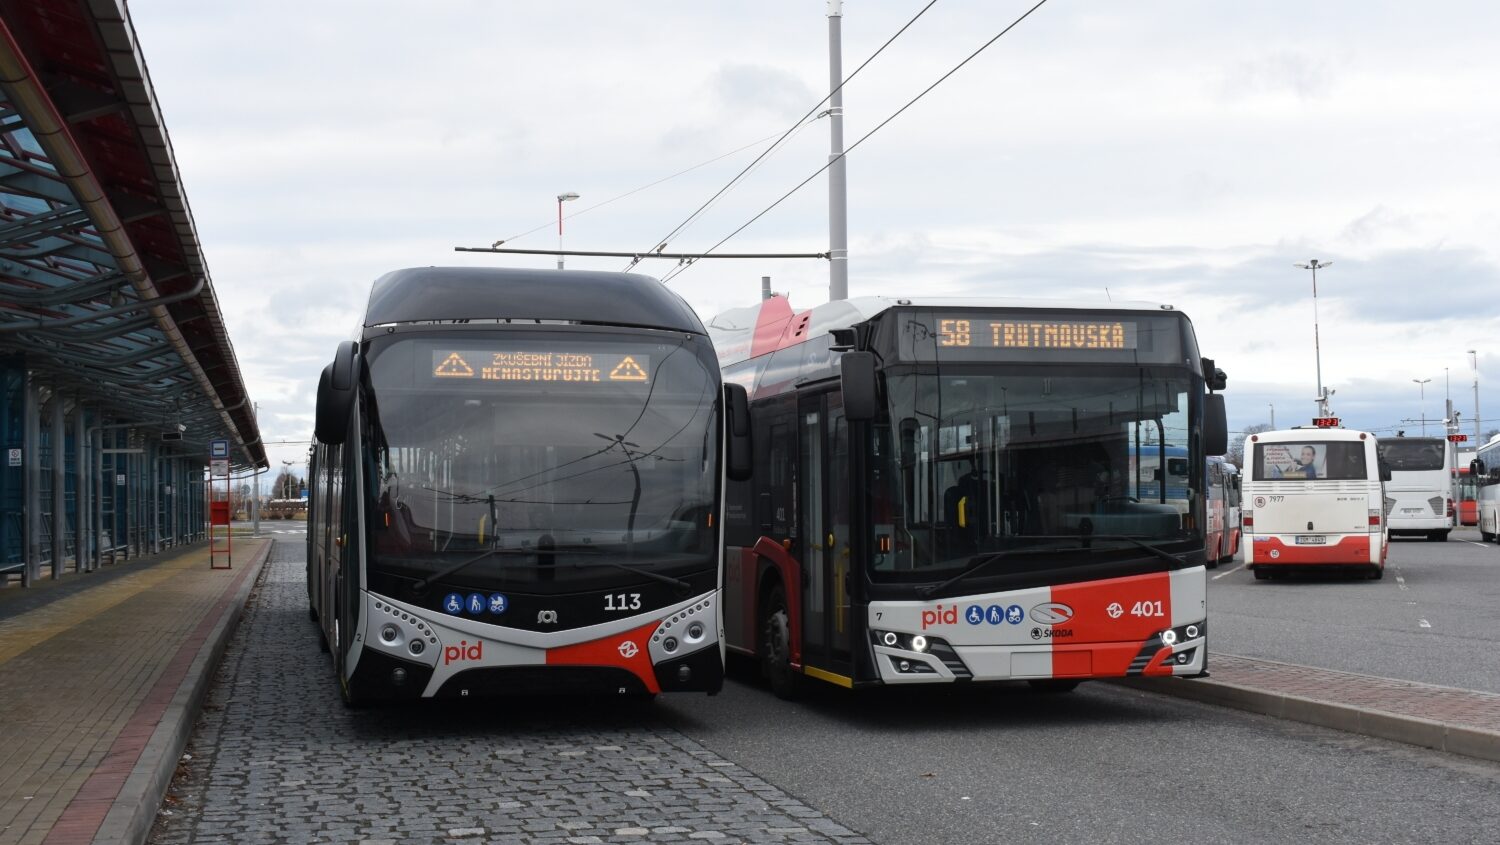 Trolejbusy mezi Prahou a Brandýsem čekají na stavební povolení